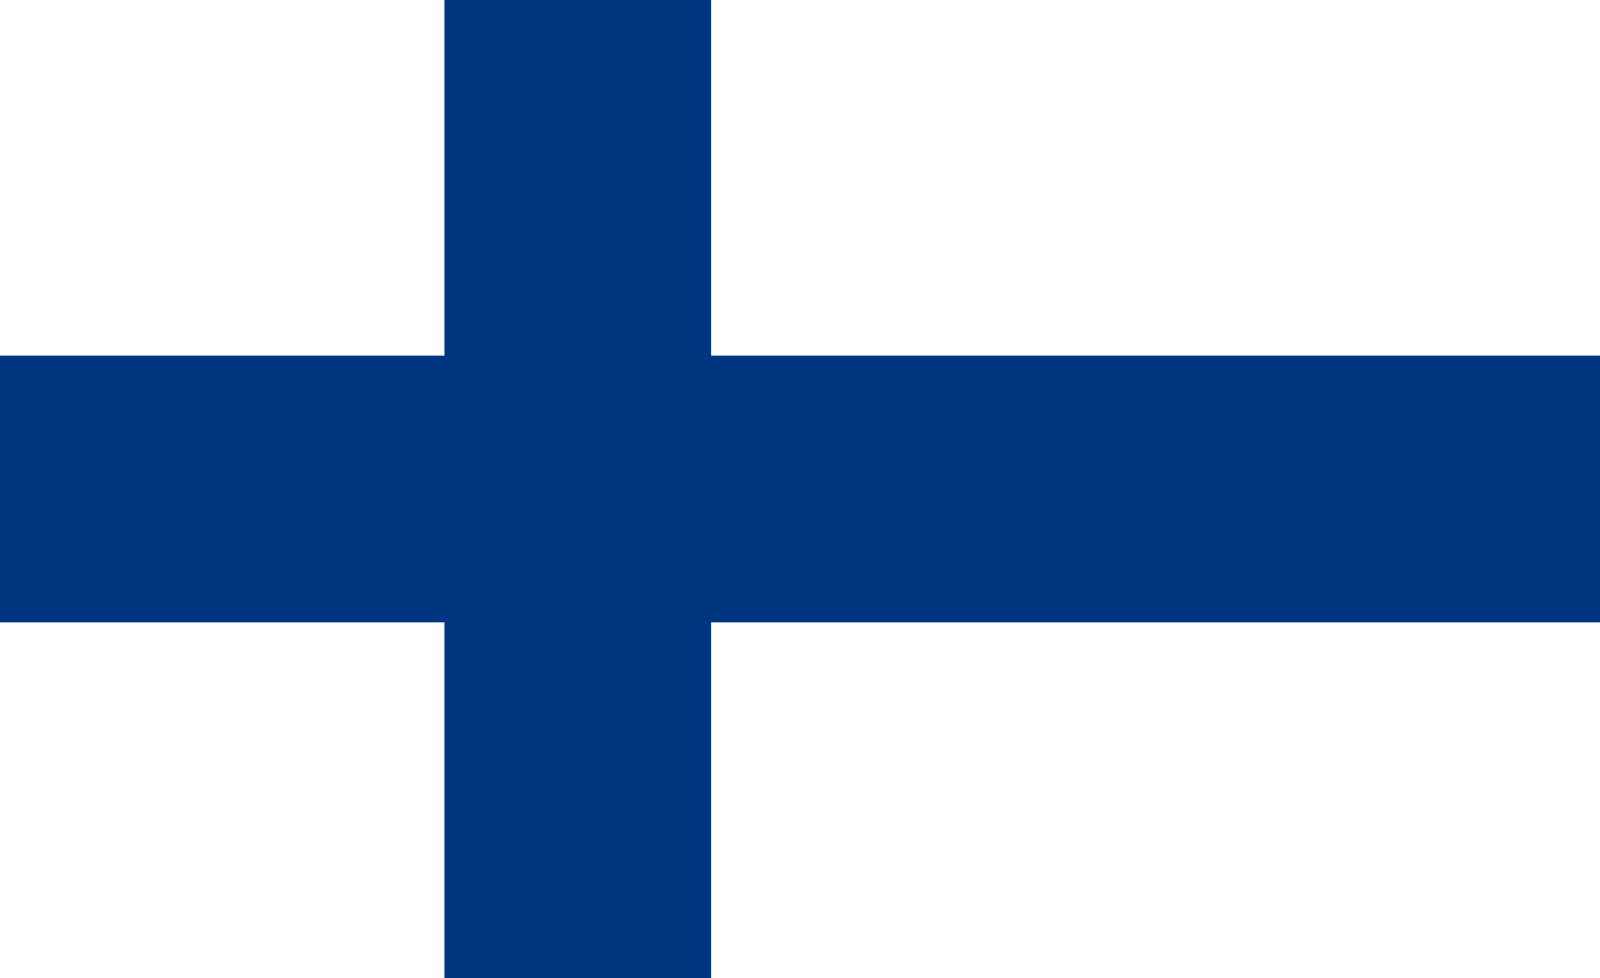 Bild der Staatsflagge Finnland - mit einer Auflösung von 1600x978 - Europa